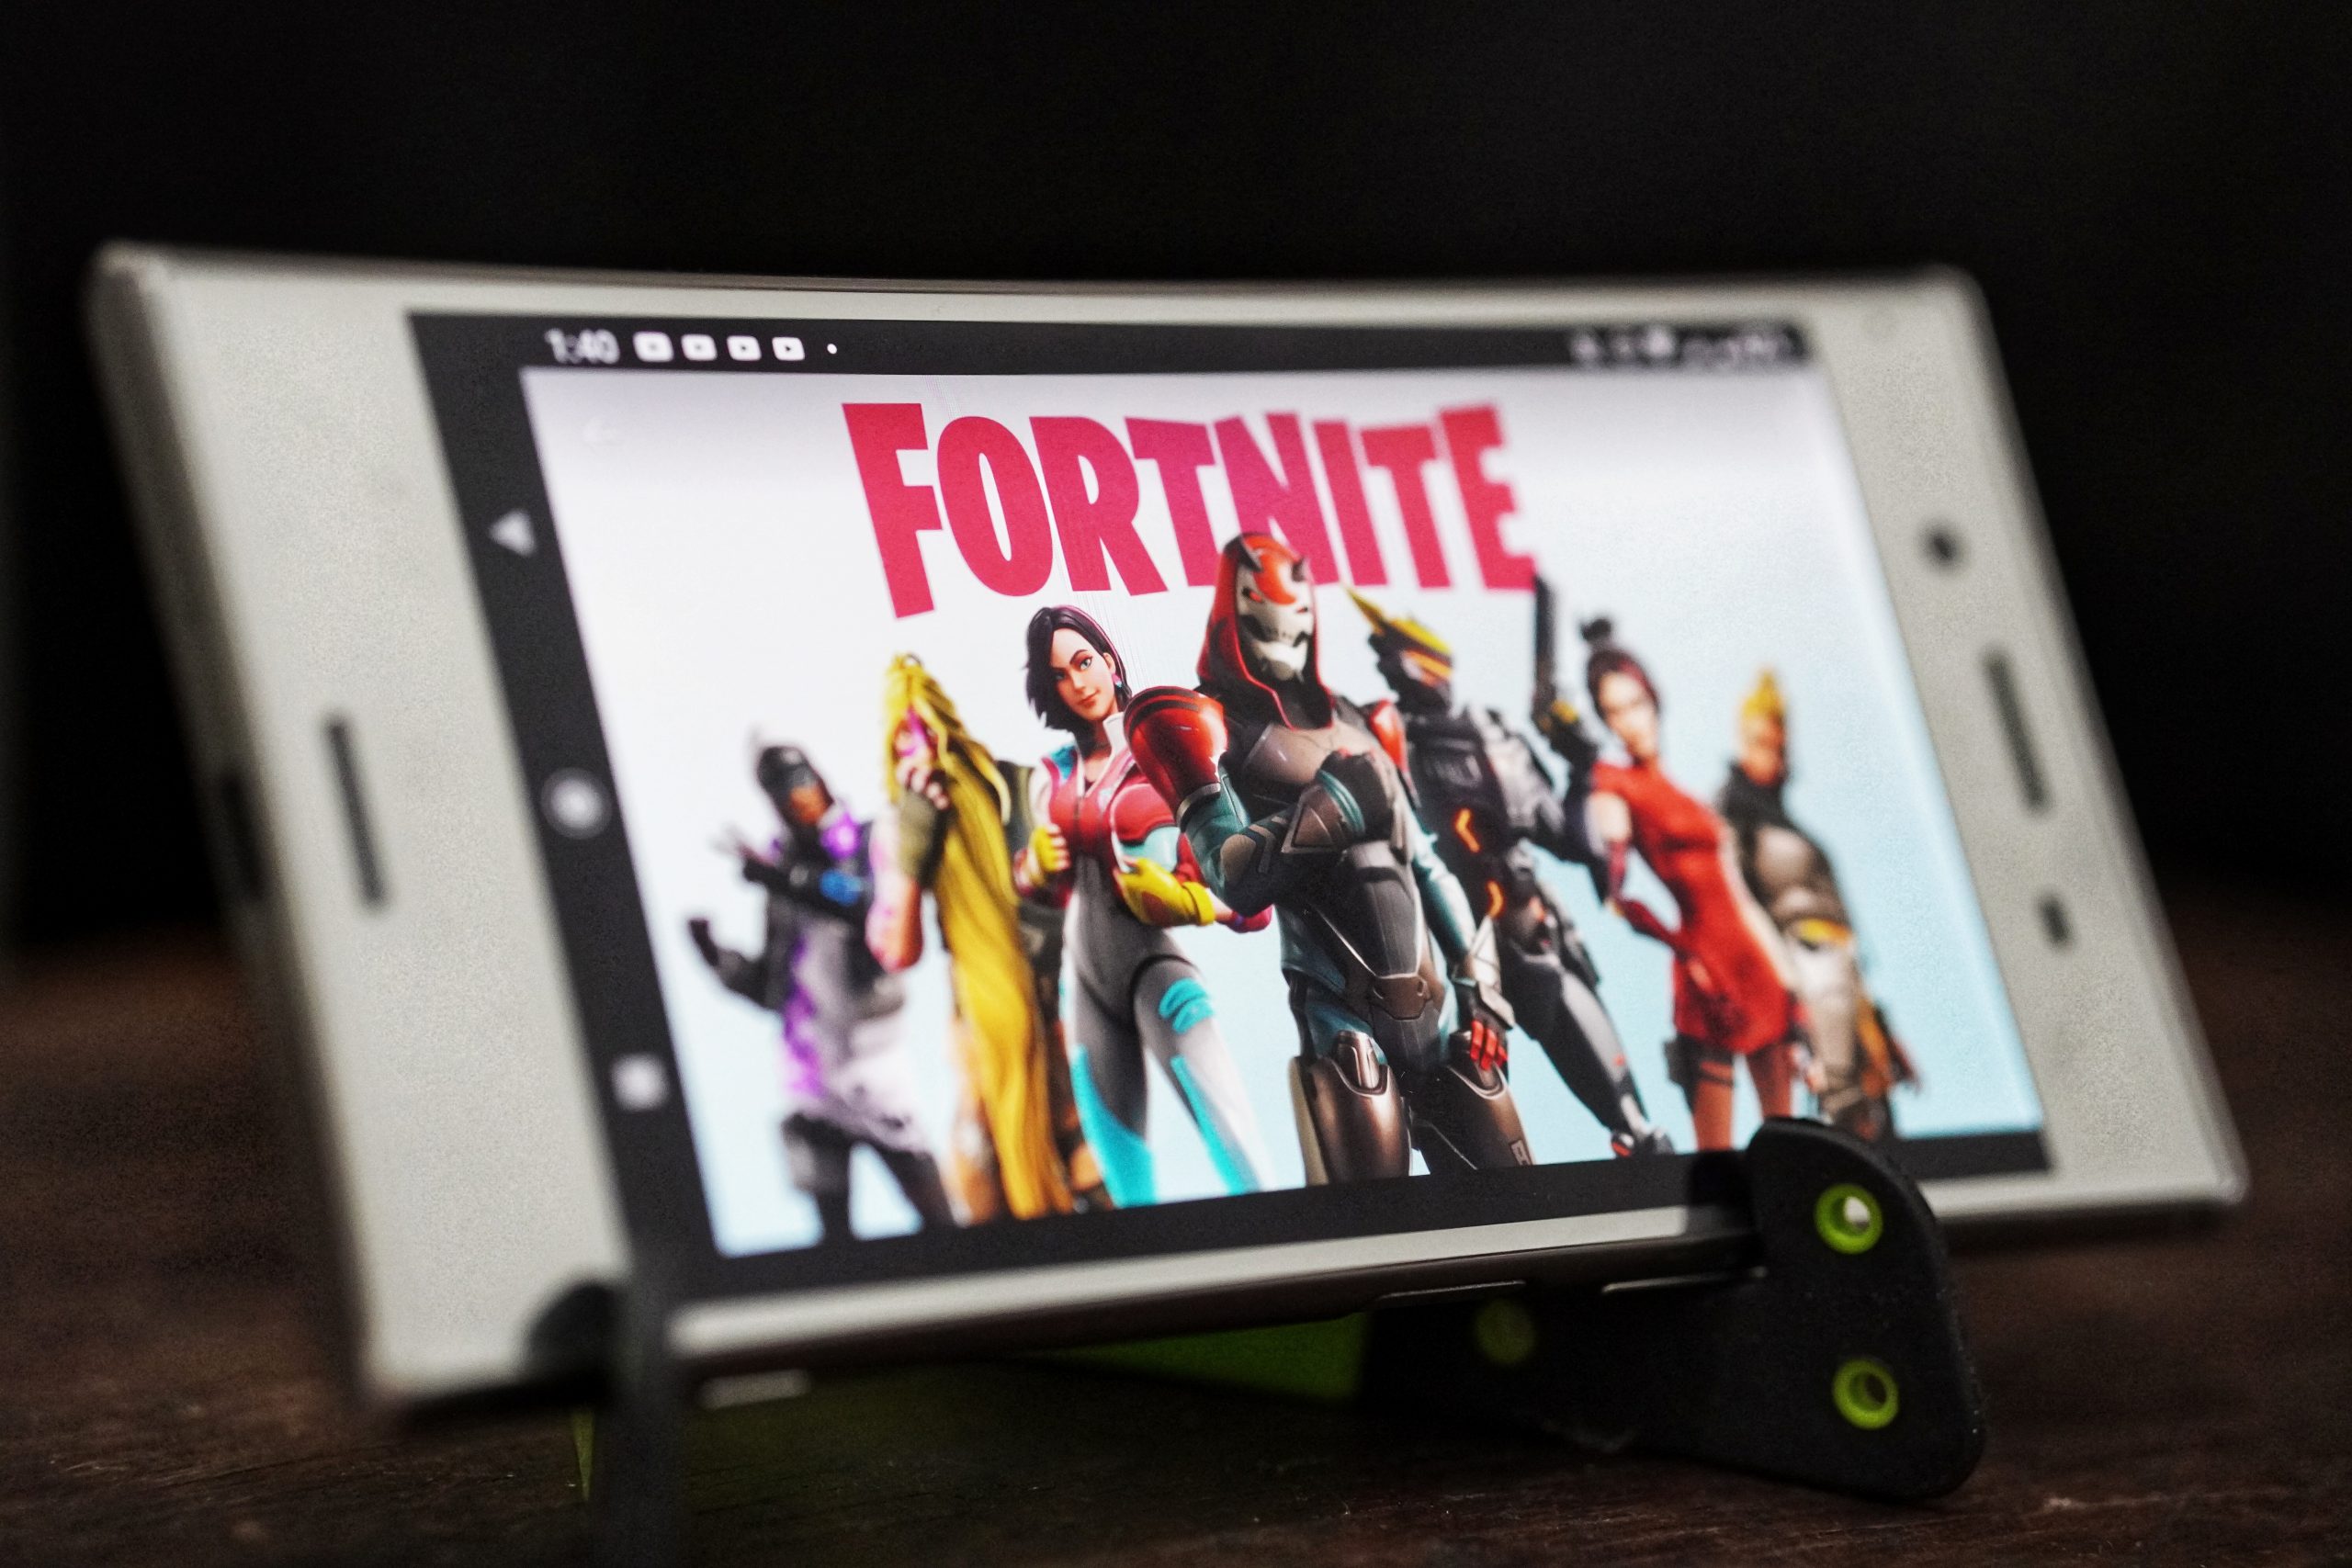 Ein Smartphone-Display zeigt das Spiel Fortnite.